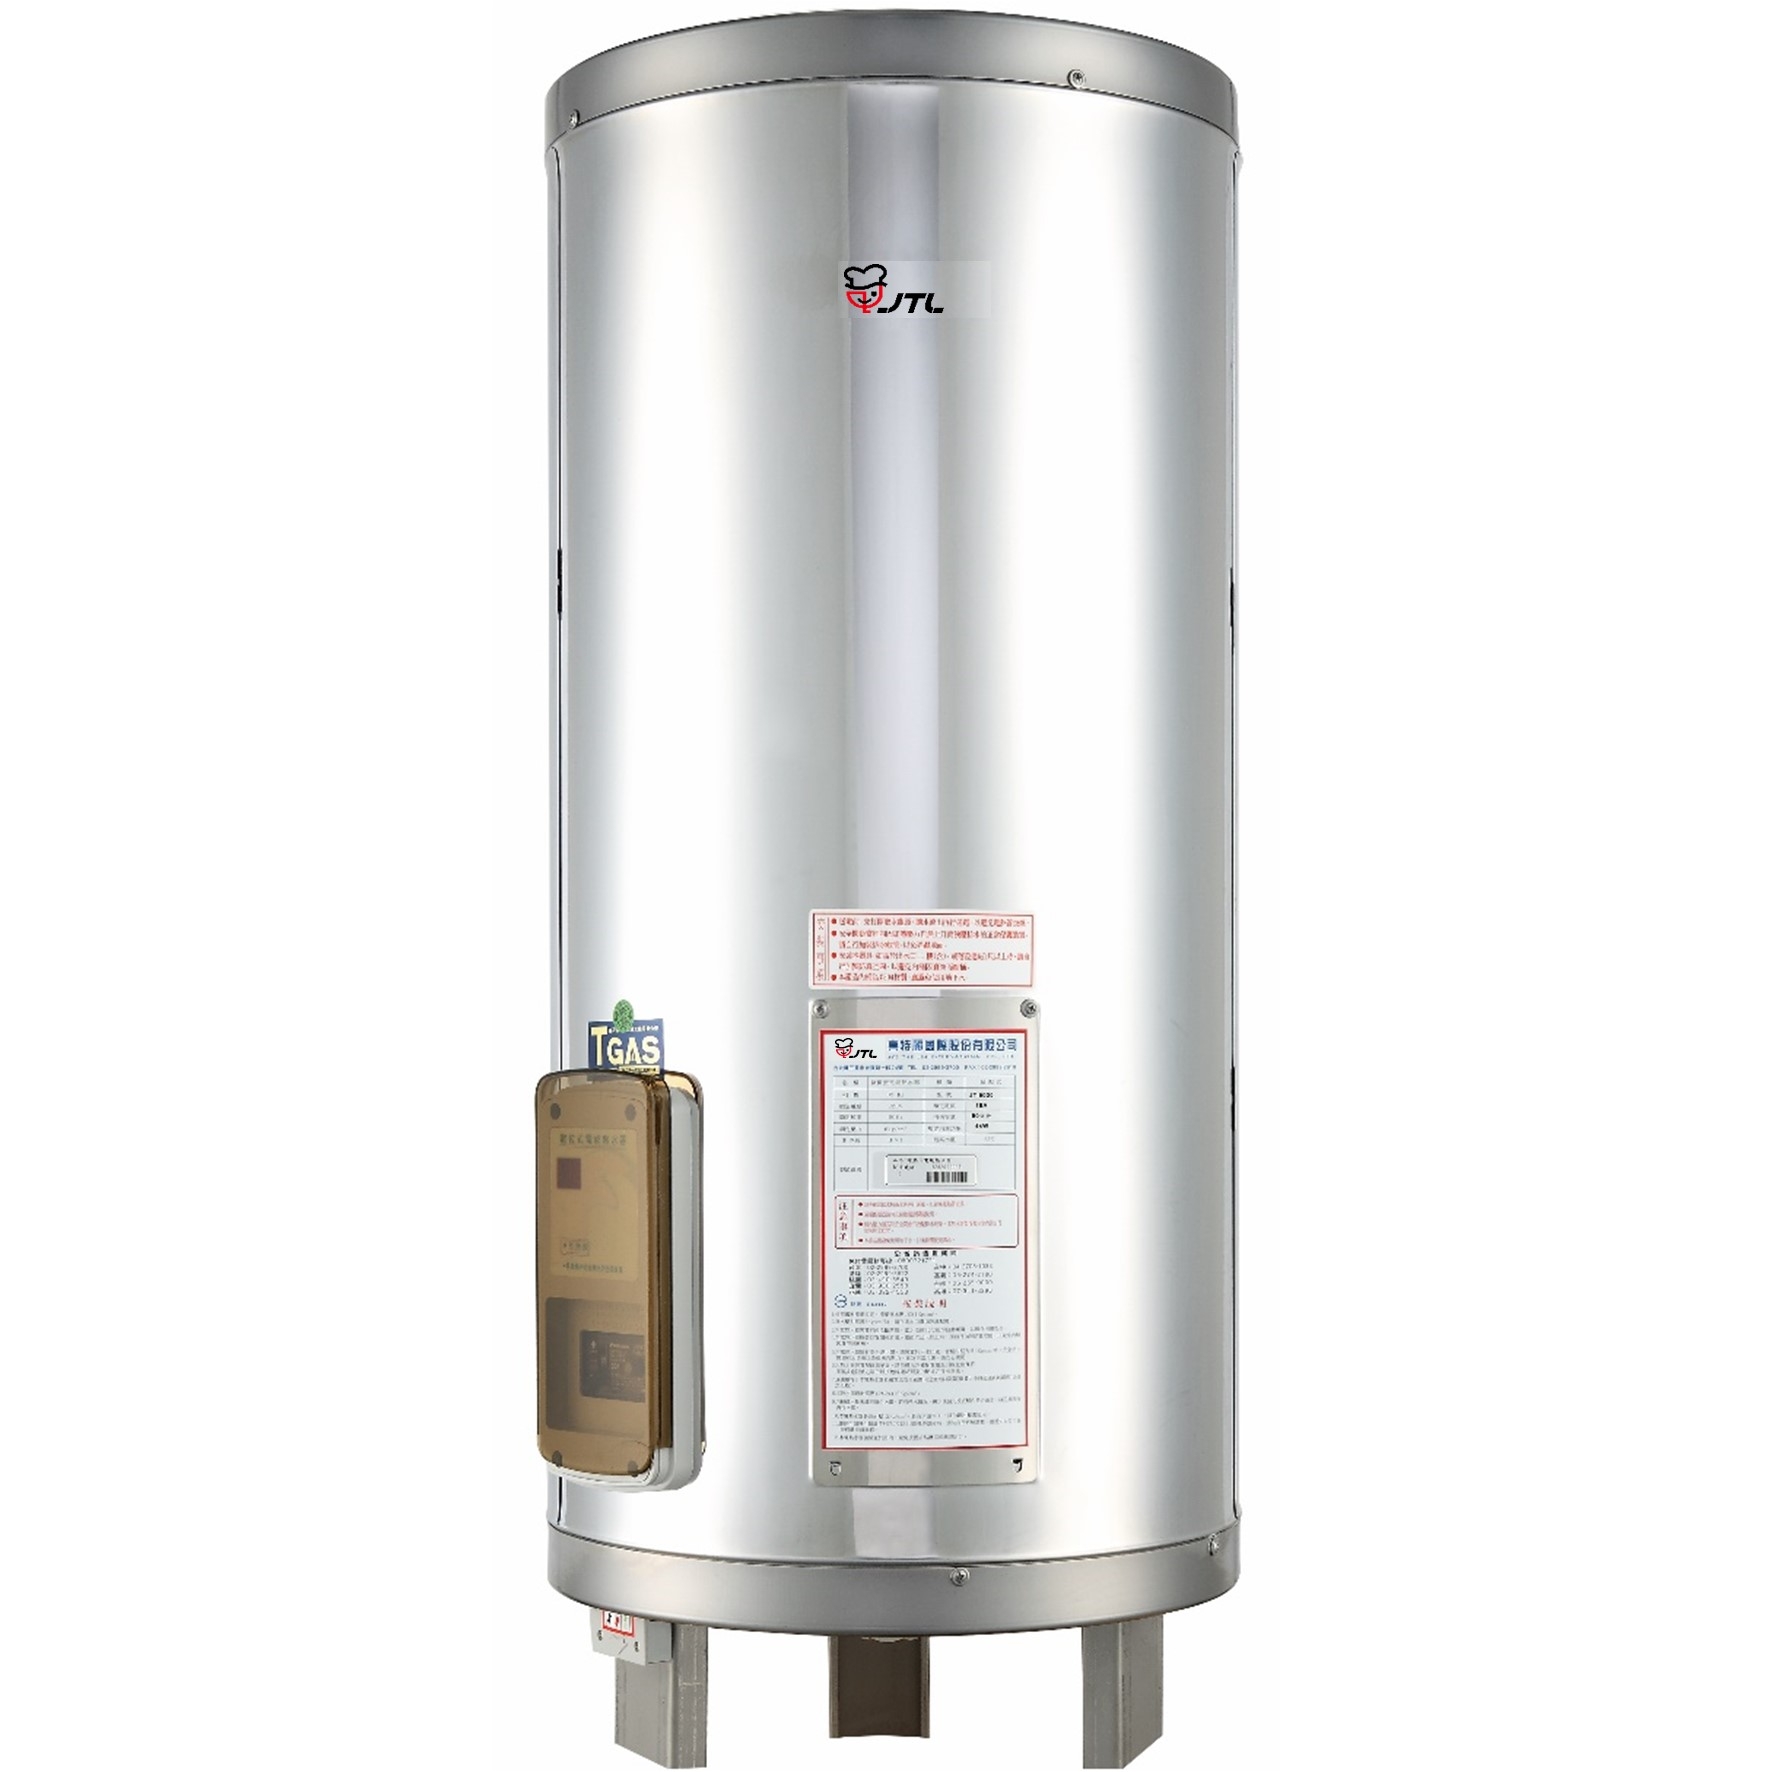 儲熱式電熱水器-50加侖-標準型